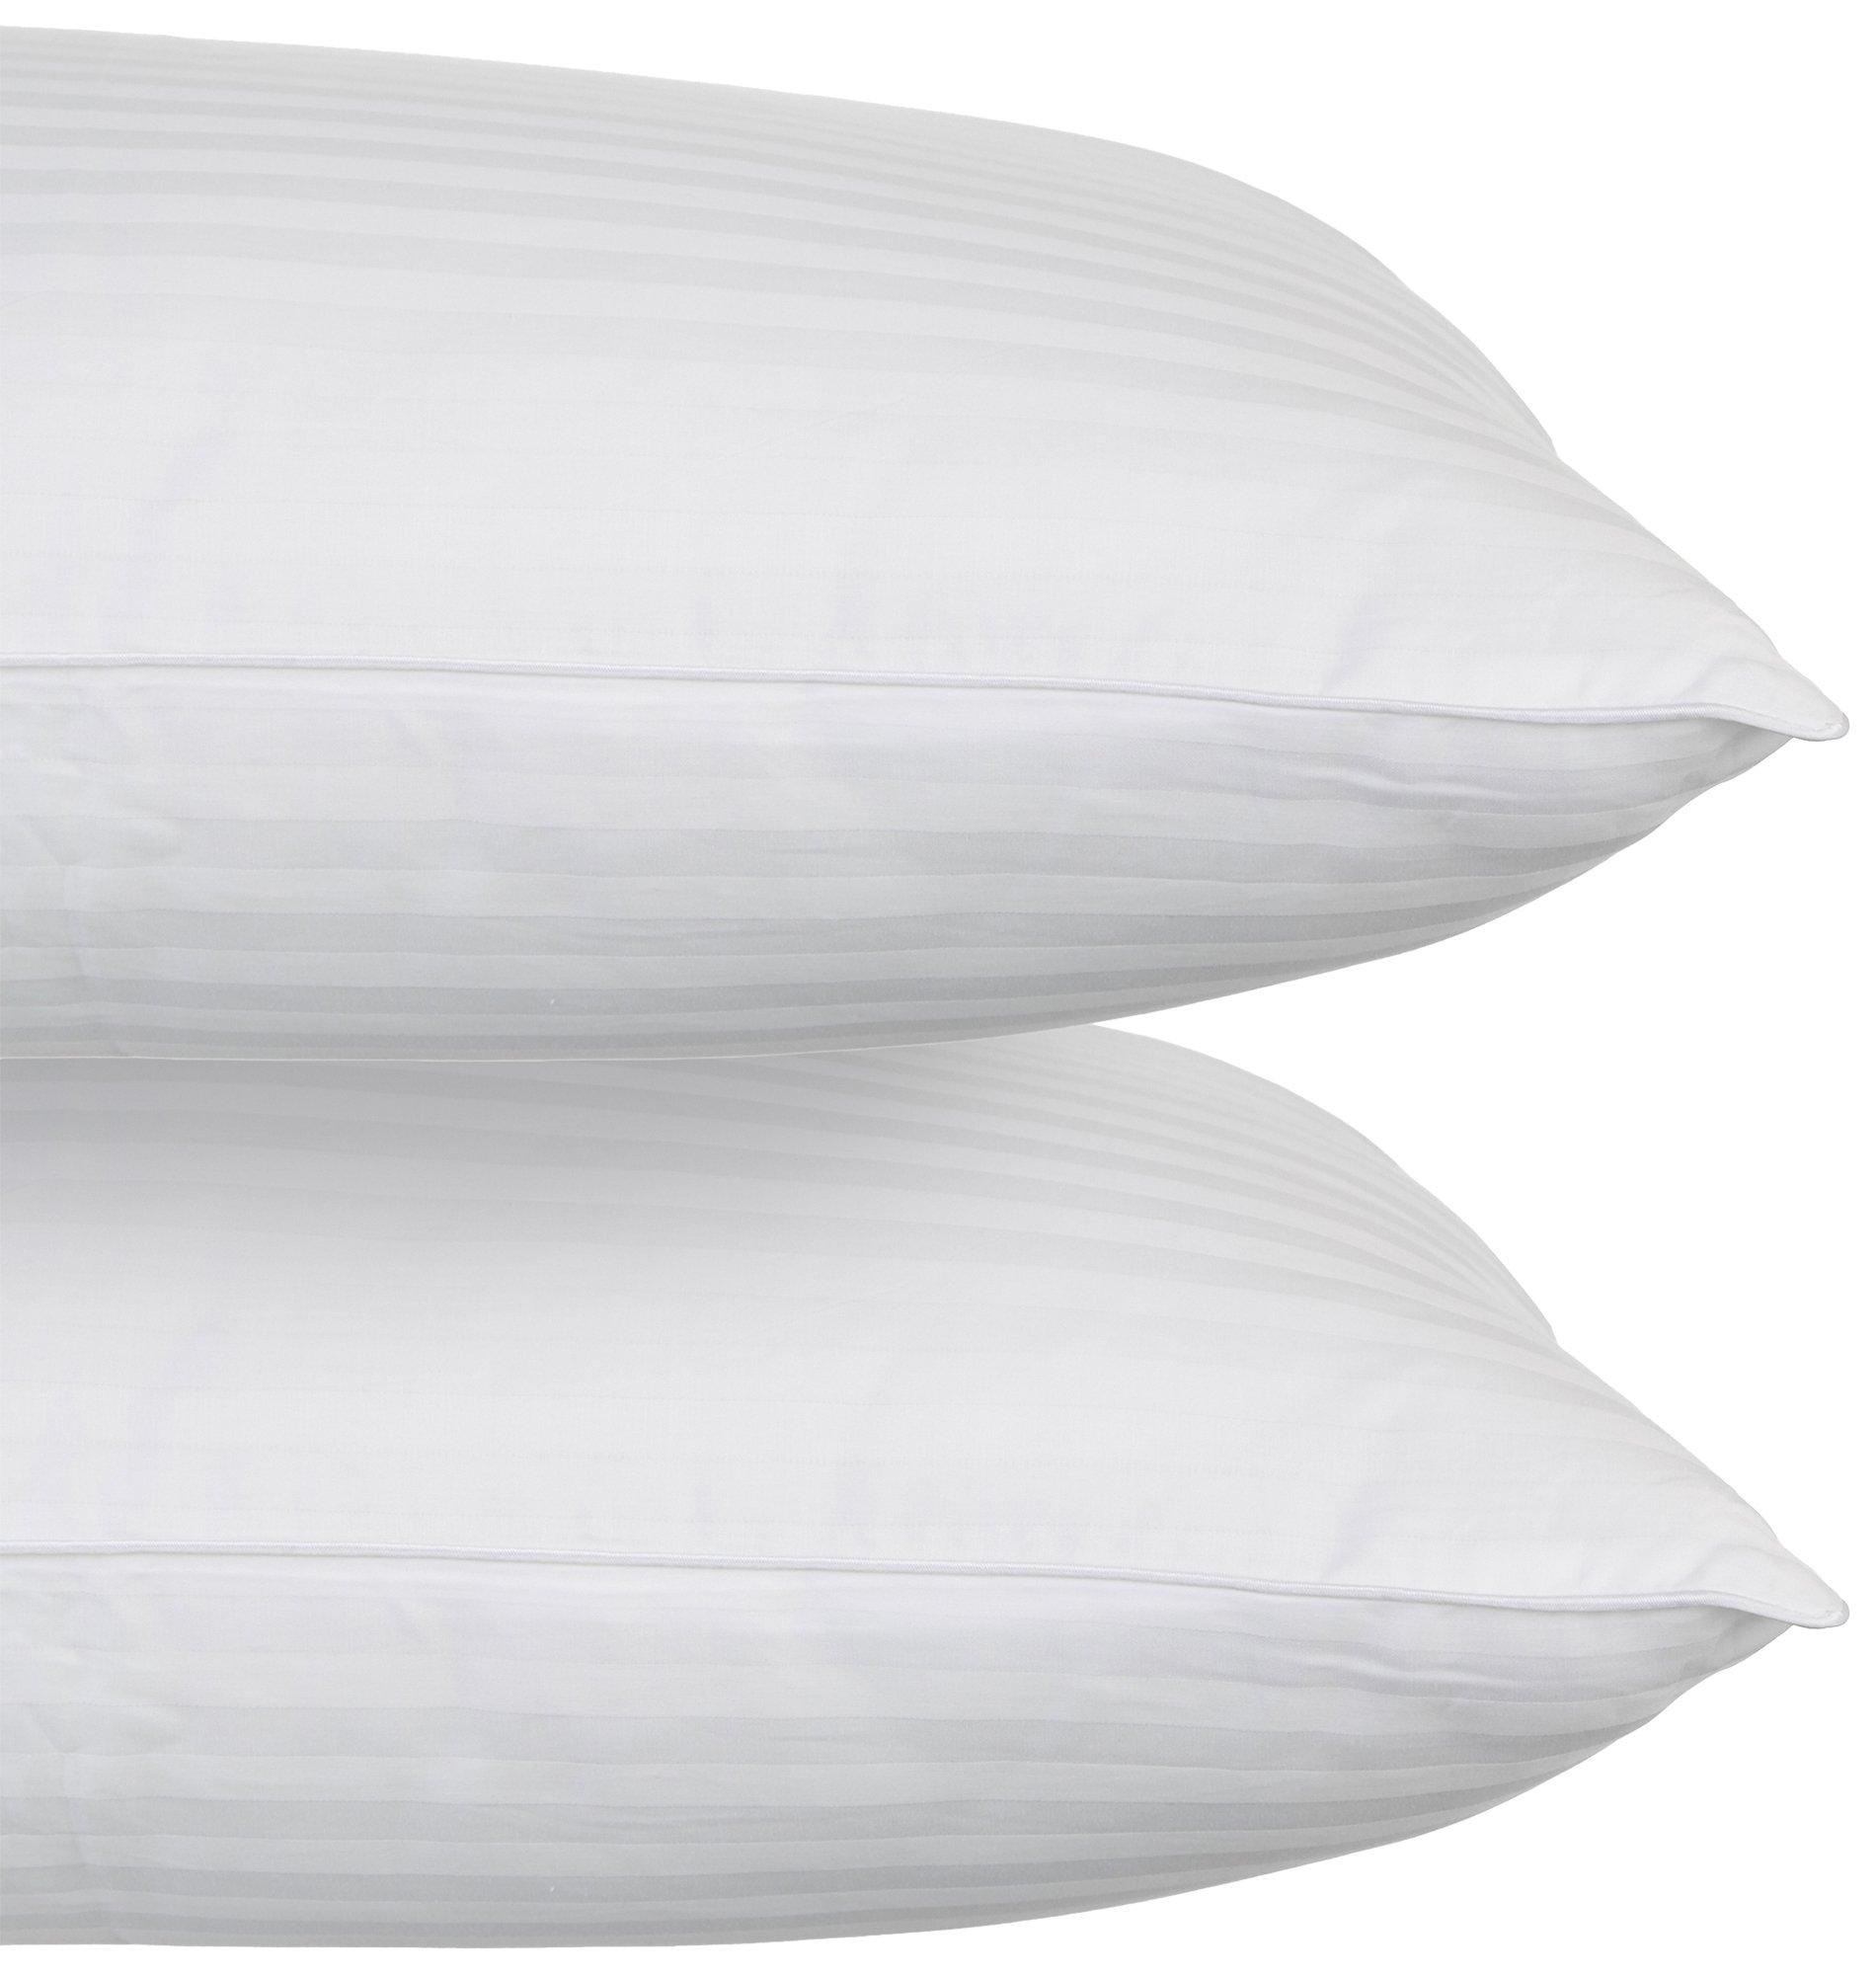 2 Serta Perfect Sleeper Standard Queen Size Bed Pillows Soft Cotton 20" x 28" 